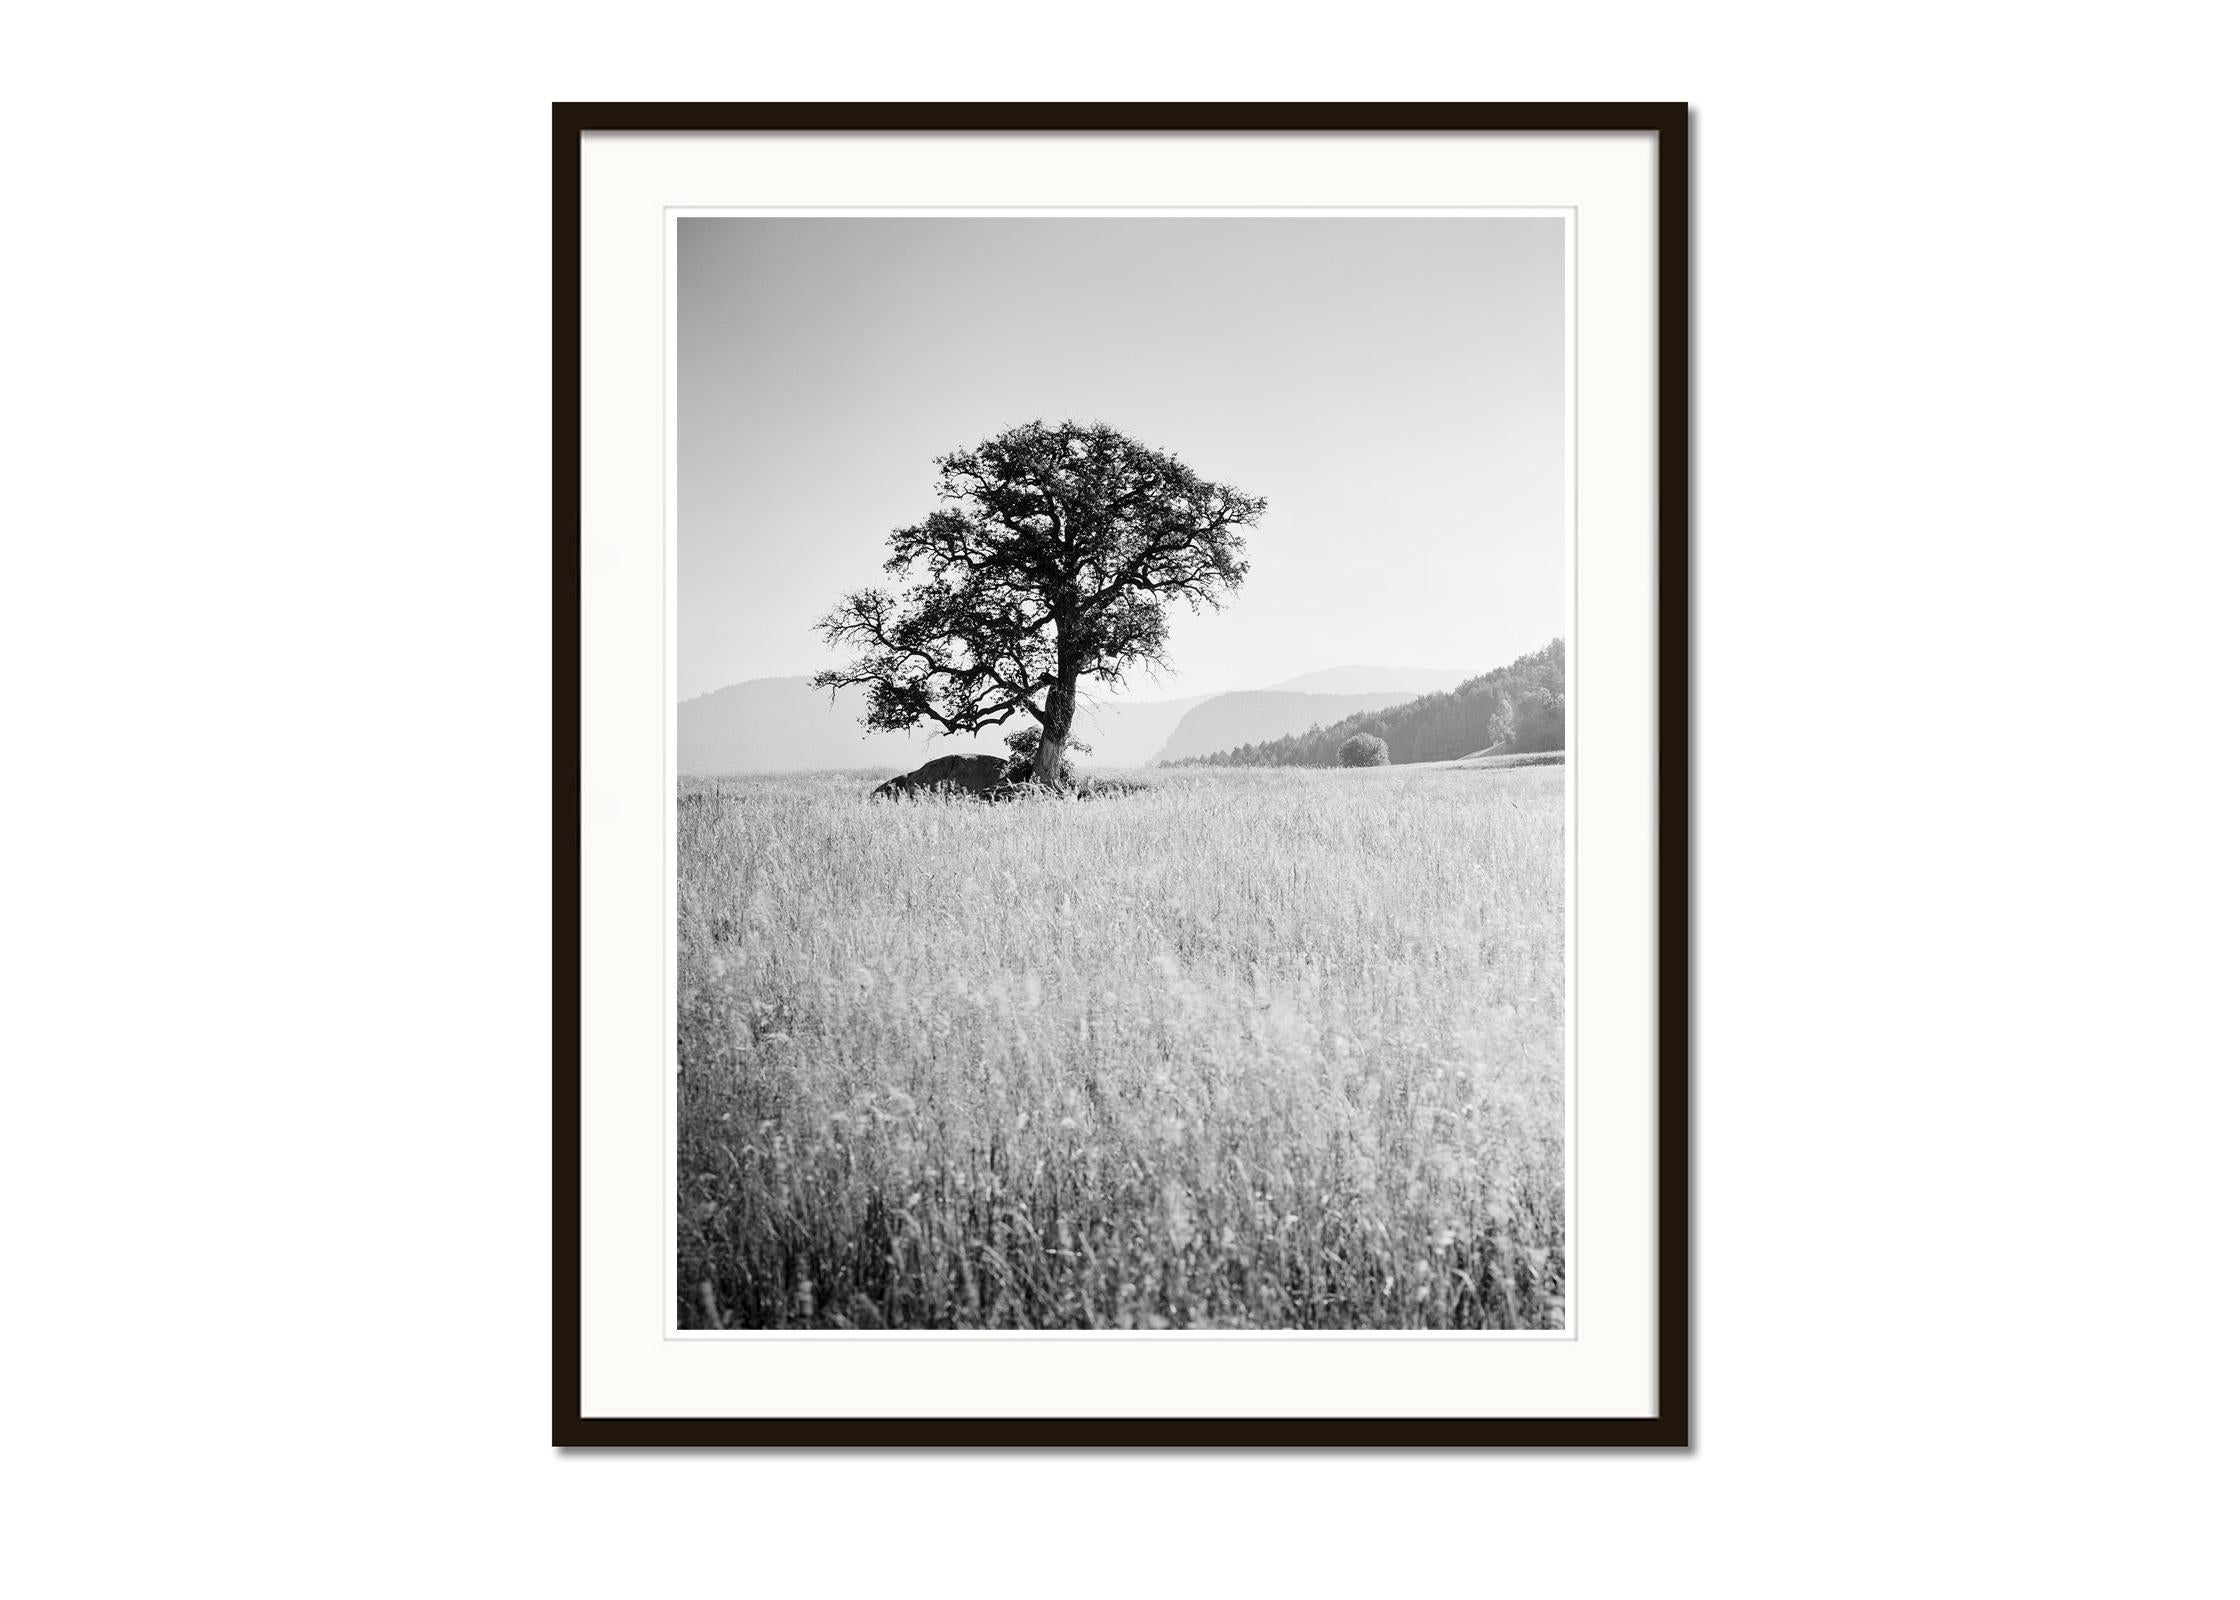 Morning Sun, ein einzelner Baum, Seiser Alm, Schwarz-Weiß-Landschaft, Kunstfotografie (Grau), Black and White Photograph, von Gerald Berghammer